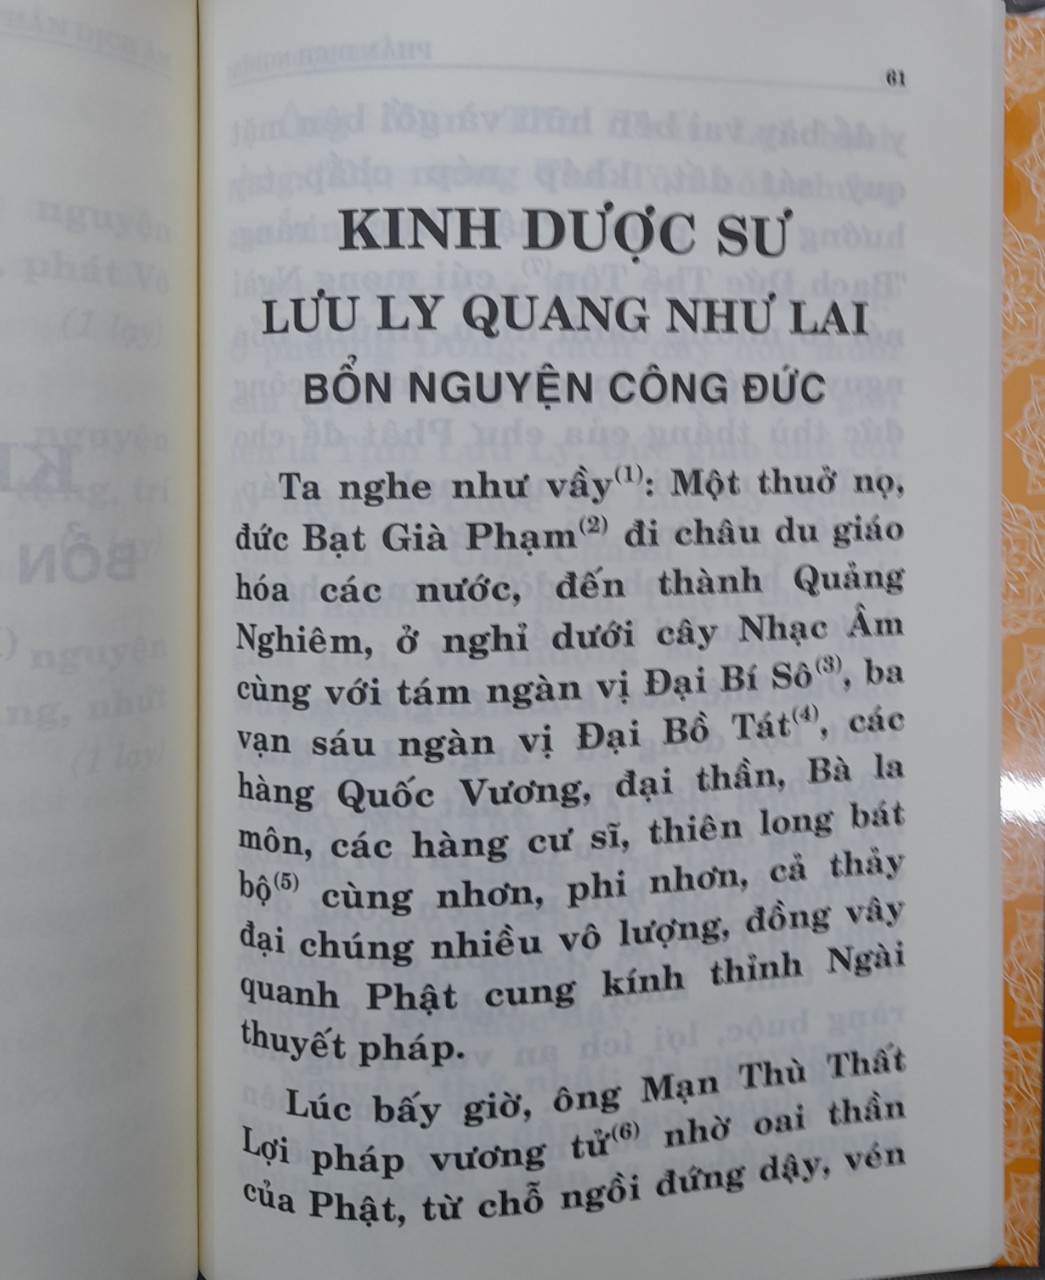 Kinh Dược Sư (Thầy Thích Huyền Dung dịch), bìa cứng